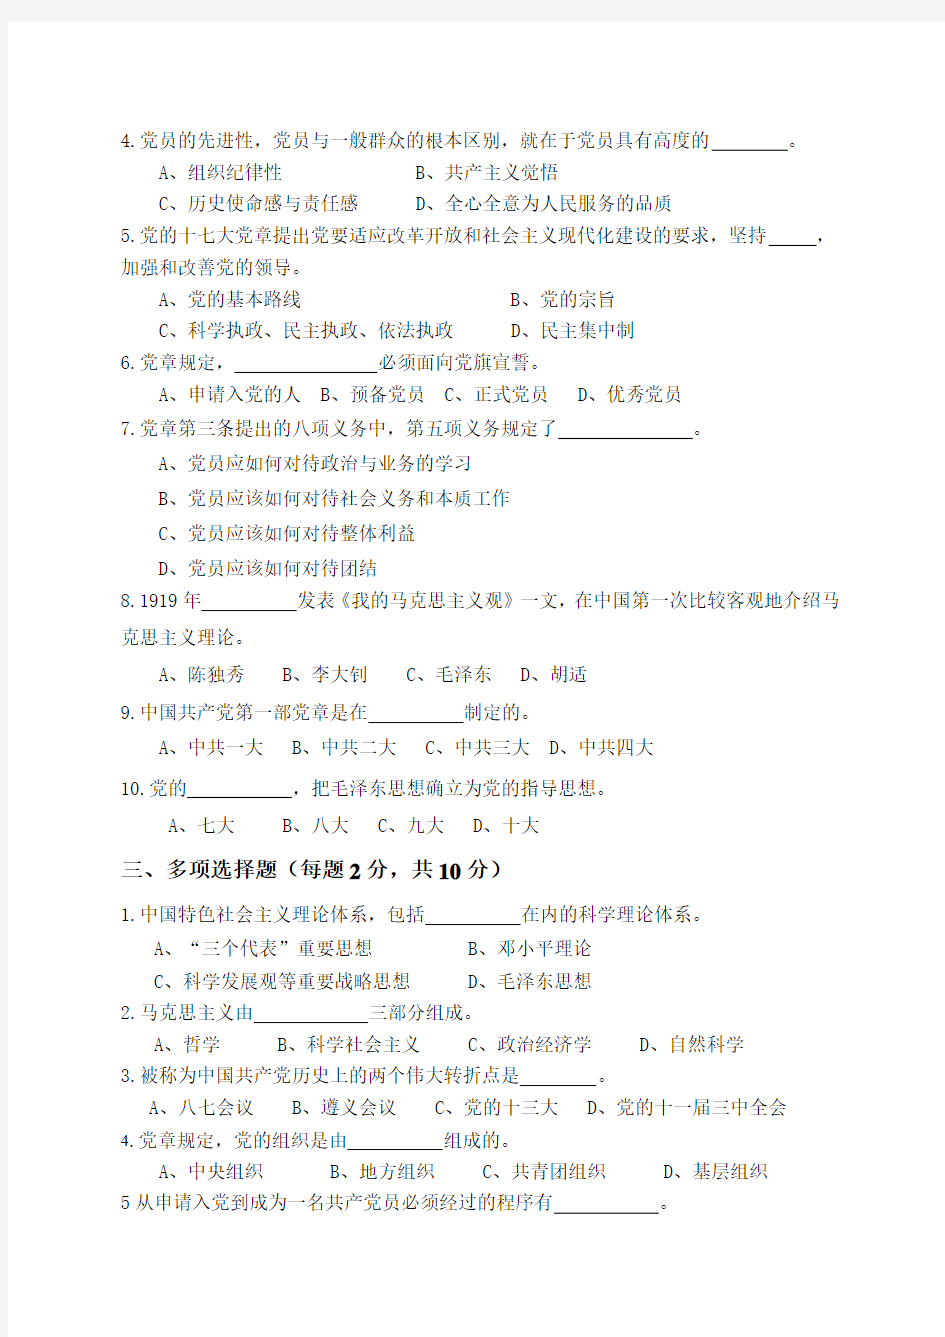 南京工业大学第十七期党课考试[1]